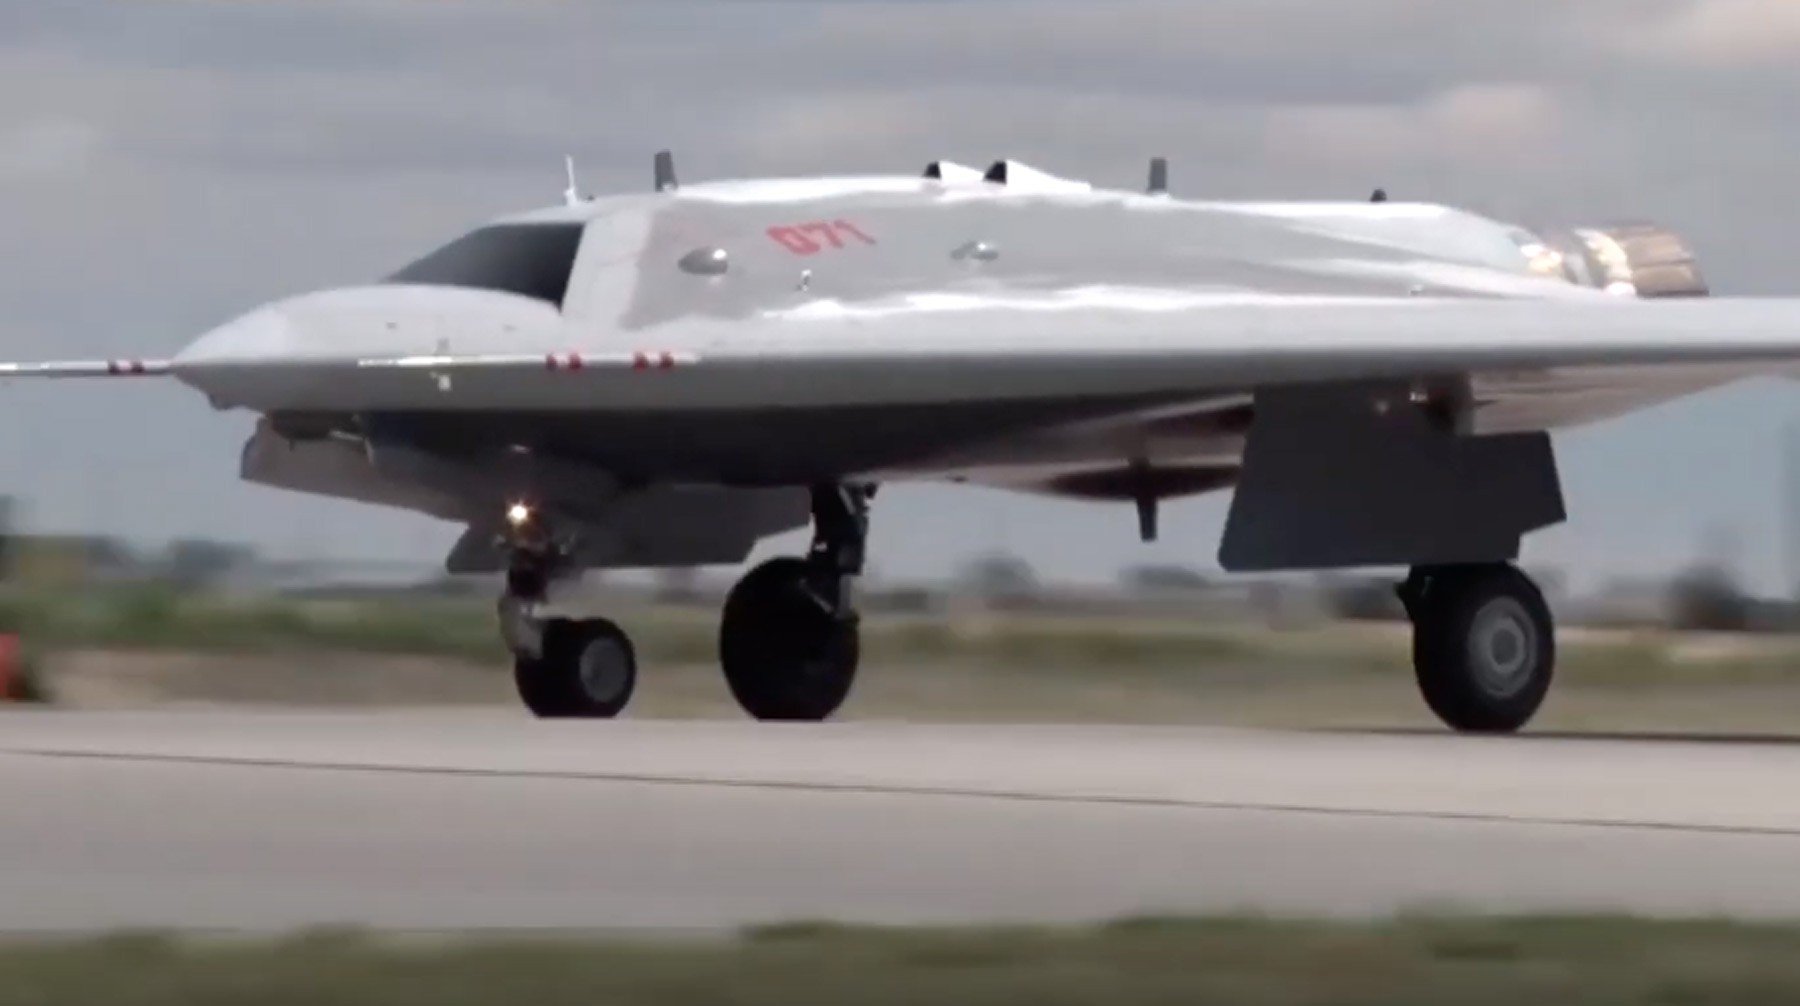 Dailystorm - Появилось видео испытаний боевого беспилотника «Охотник» в паре с Су-30СМ